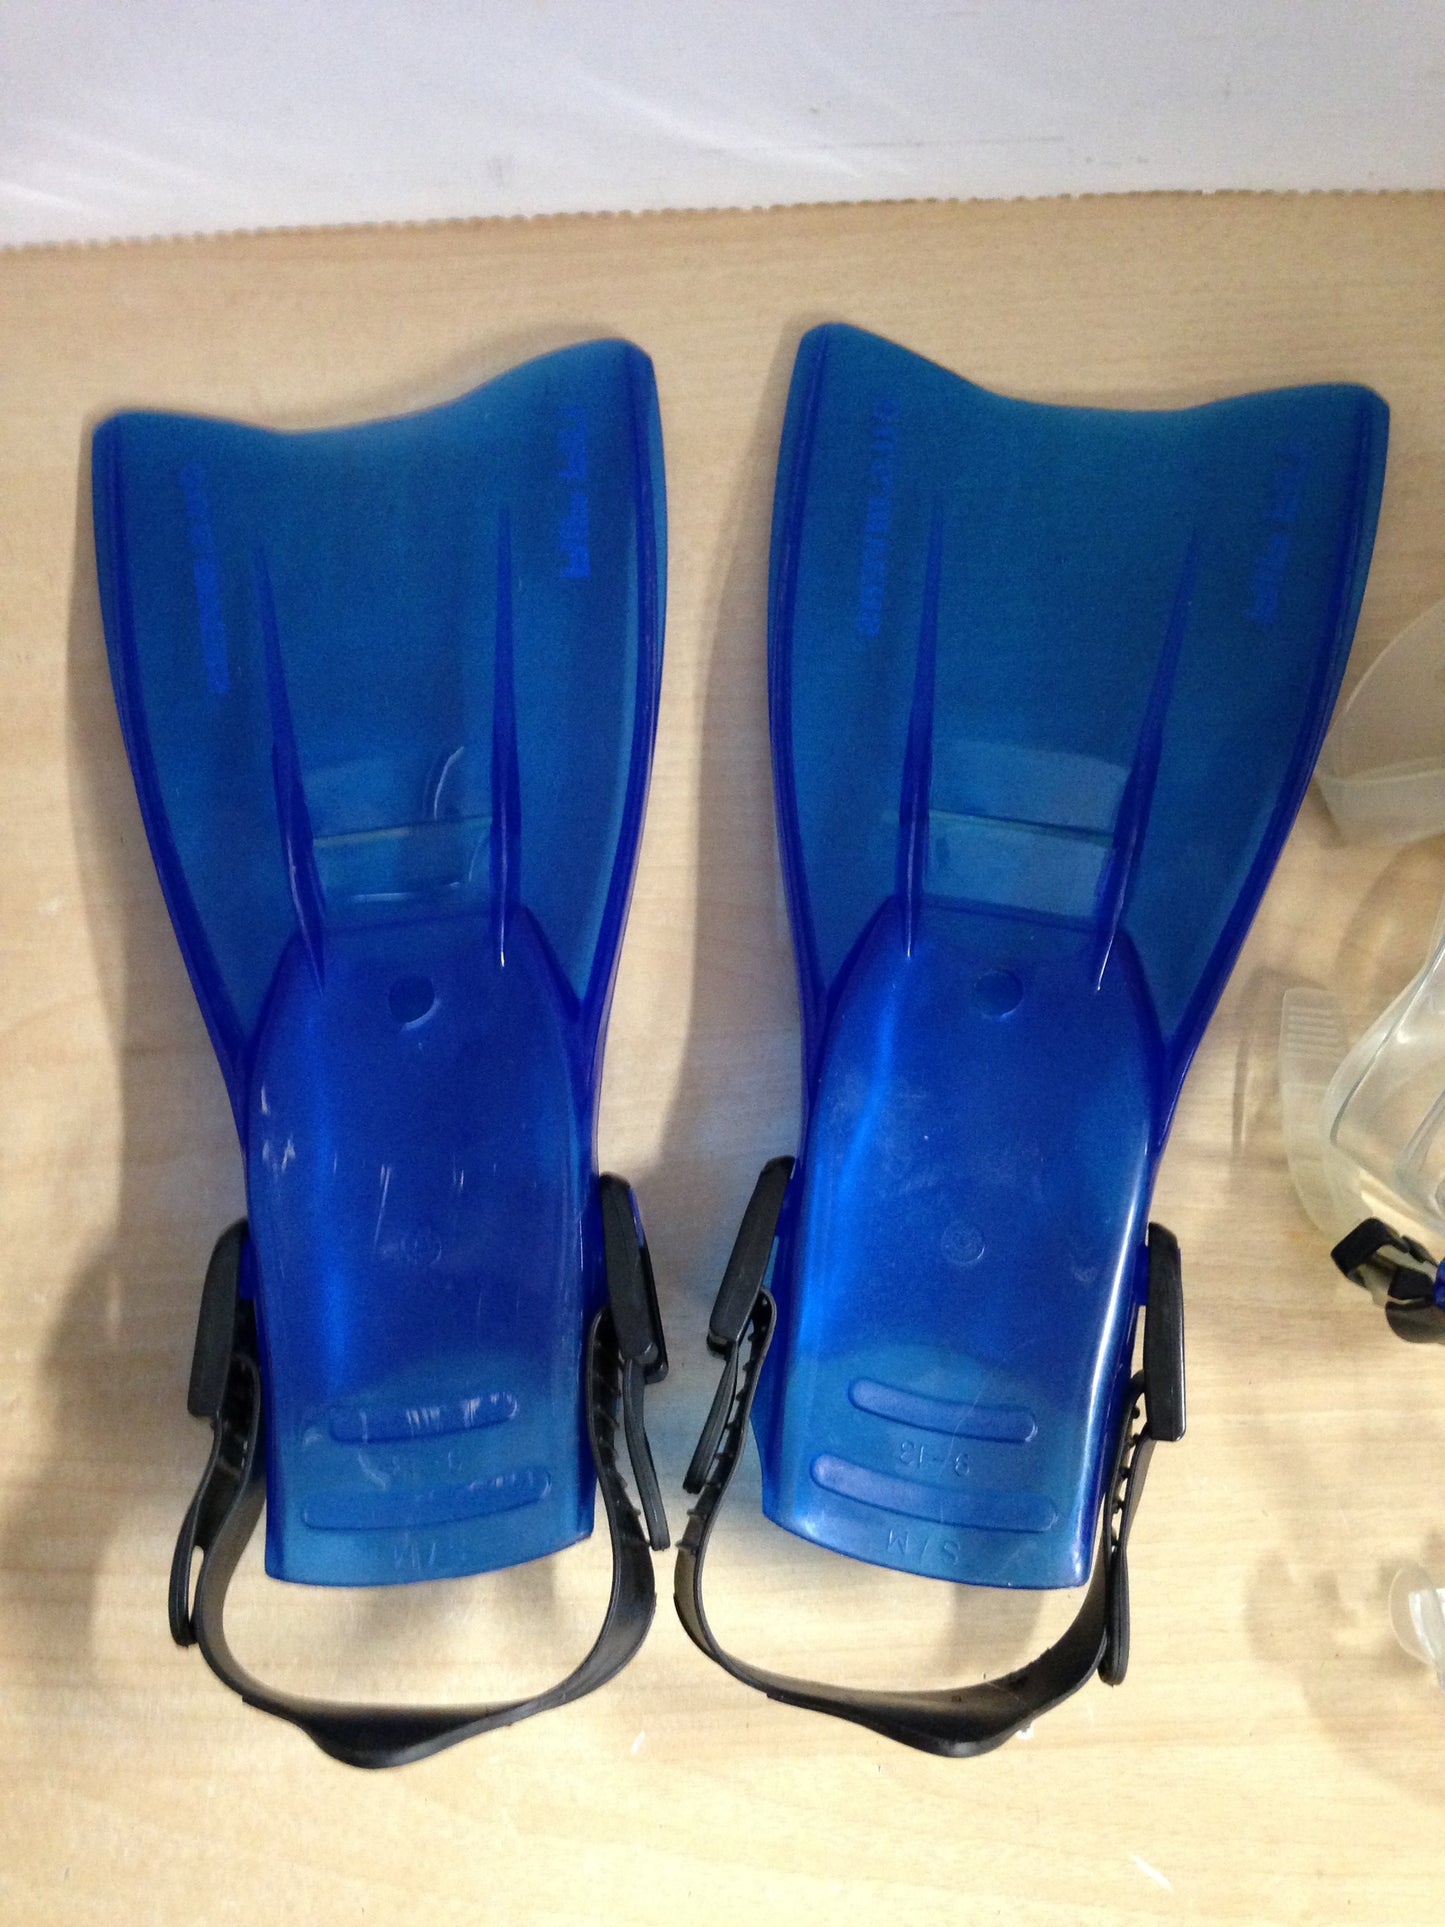 Snorkel Dive Fins Set Child Shoe Size 9-13 US Divers Air Fin Blue